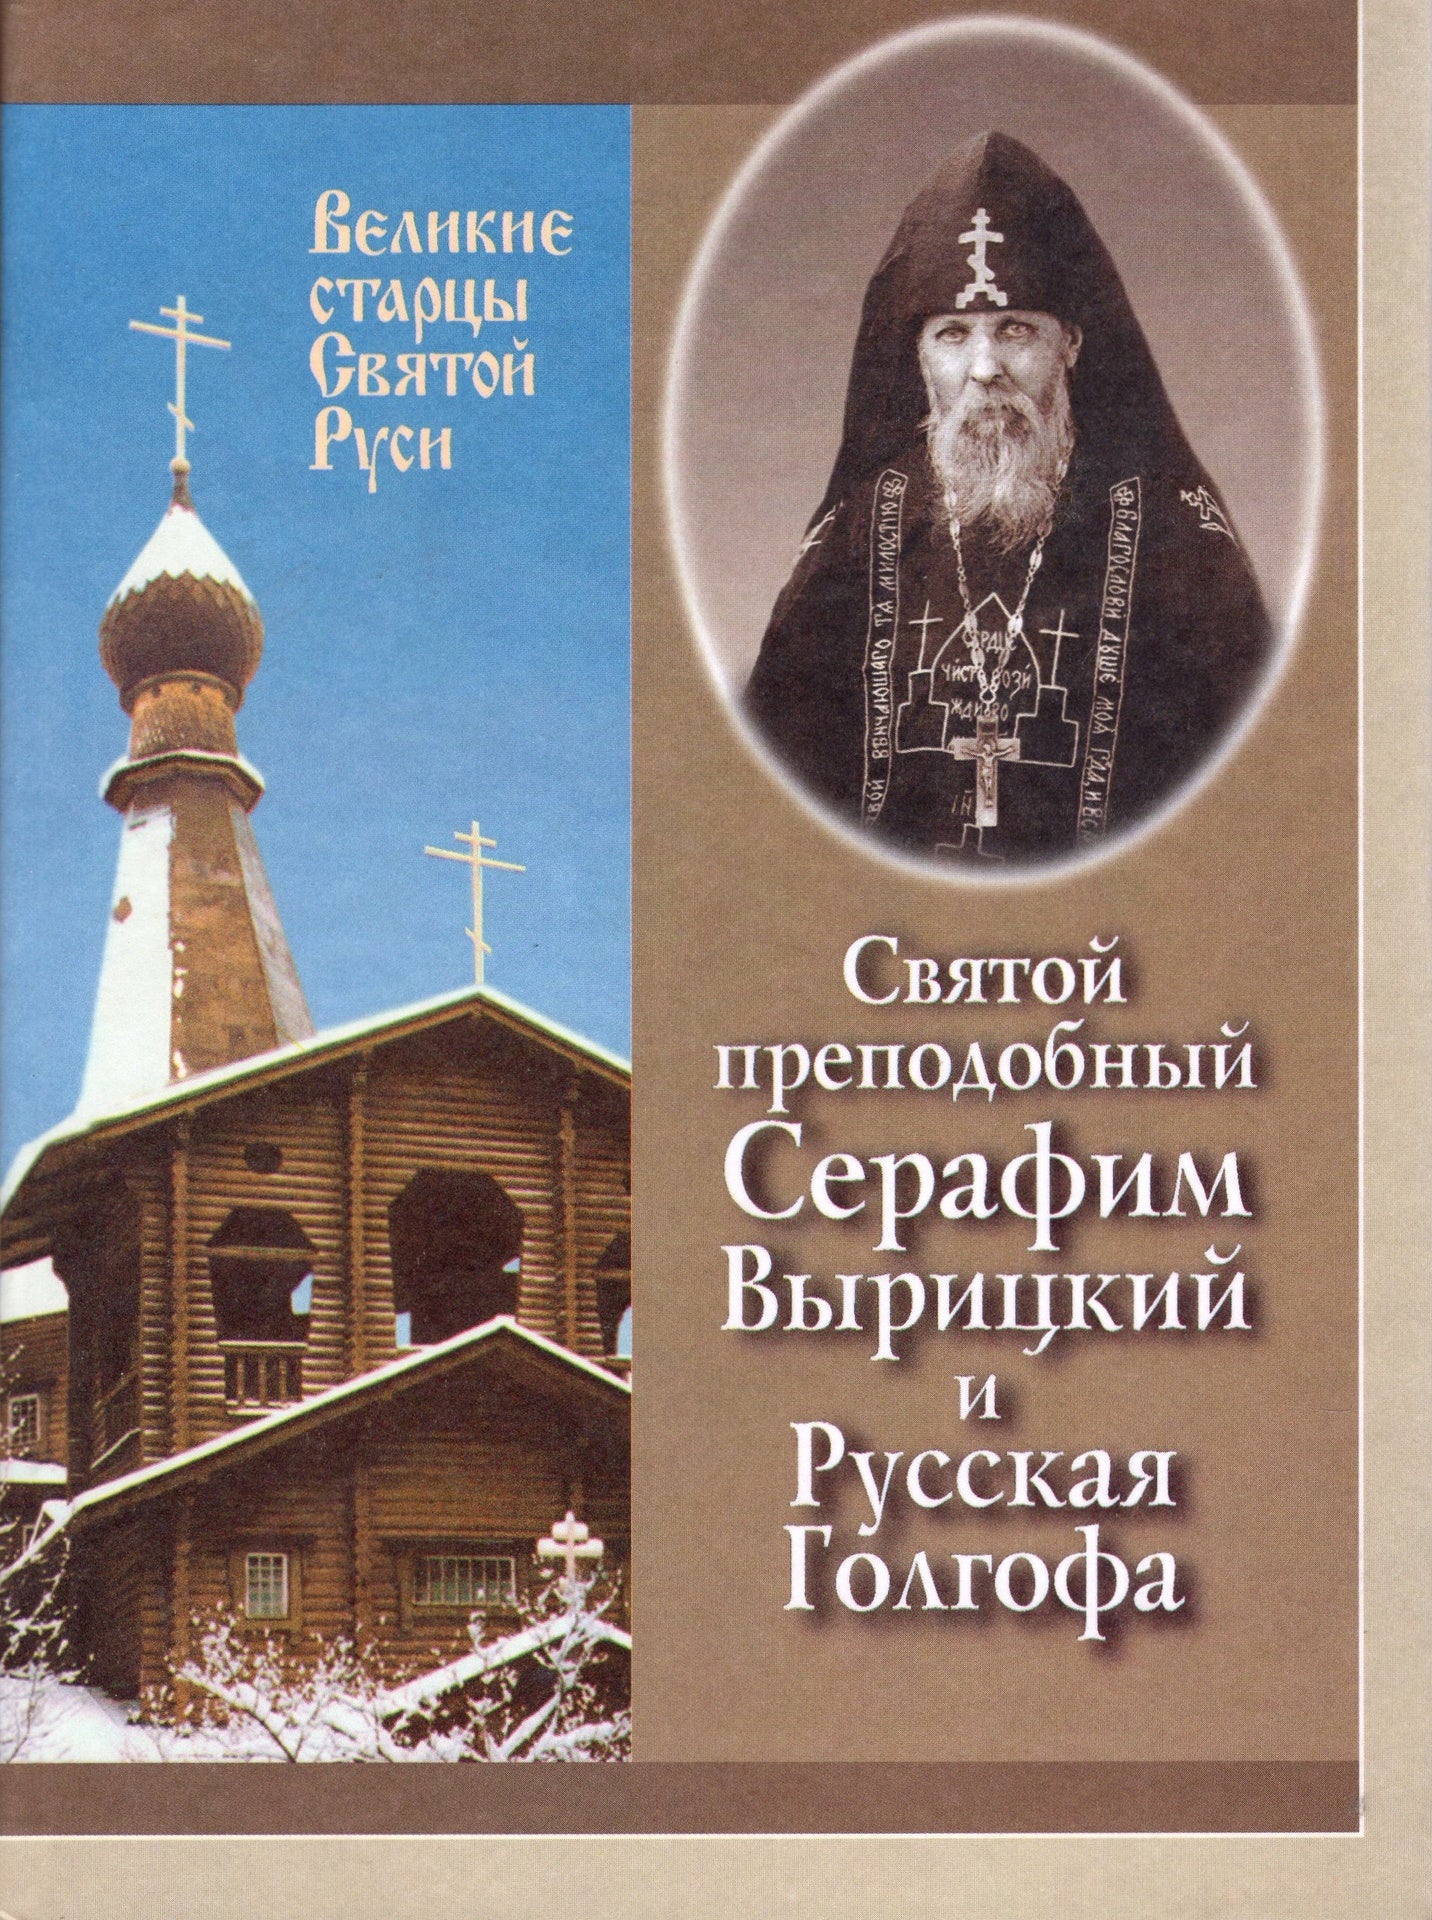 Святои преподобный Серафим Вырицкии и русская Голгофа